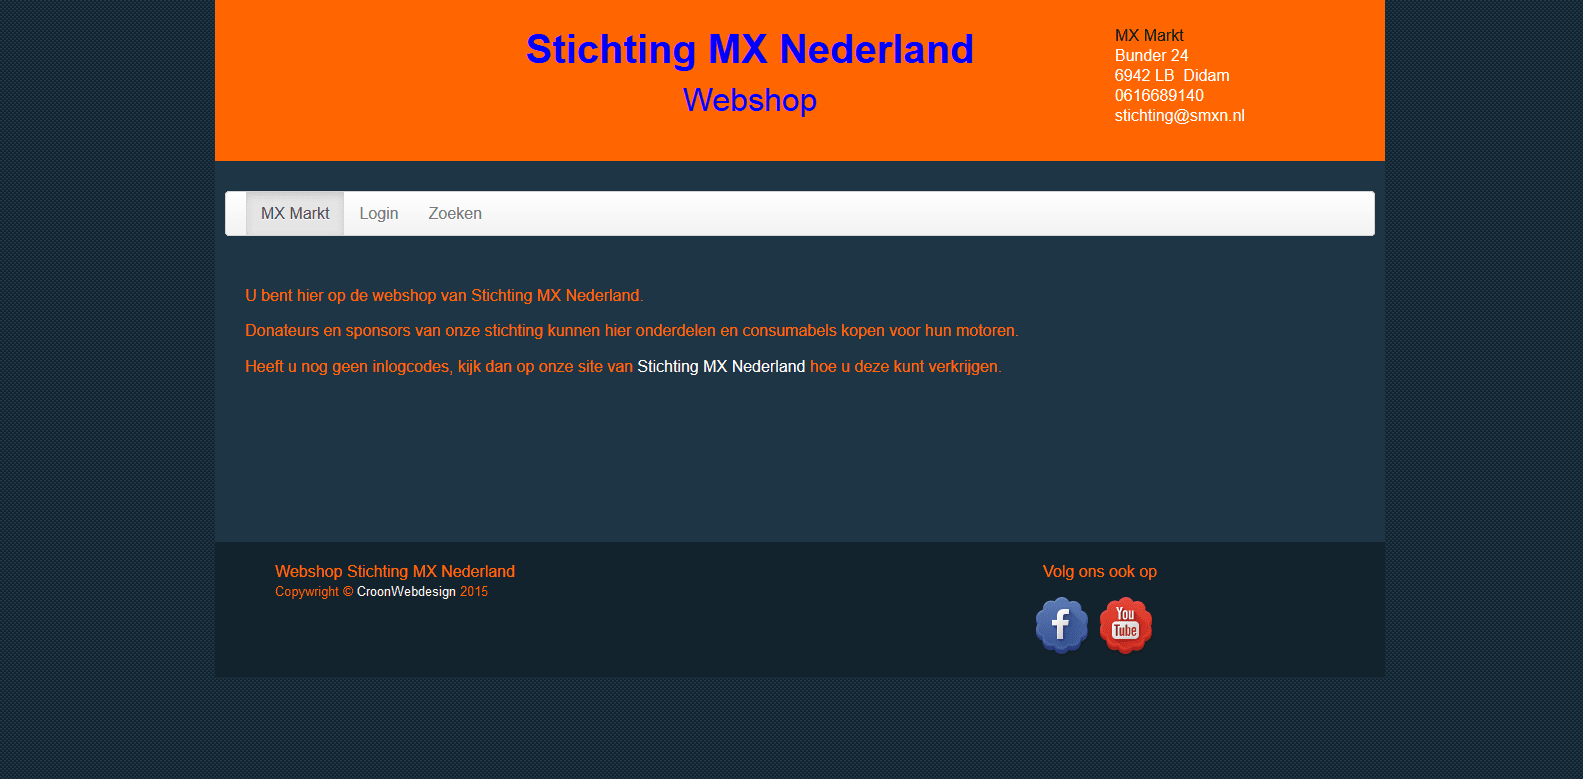 Webshop Stichting MX Nederland